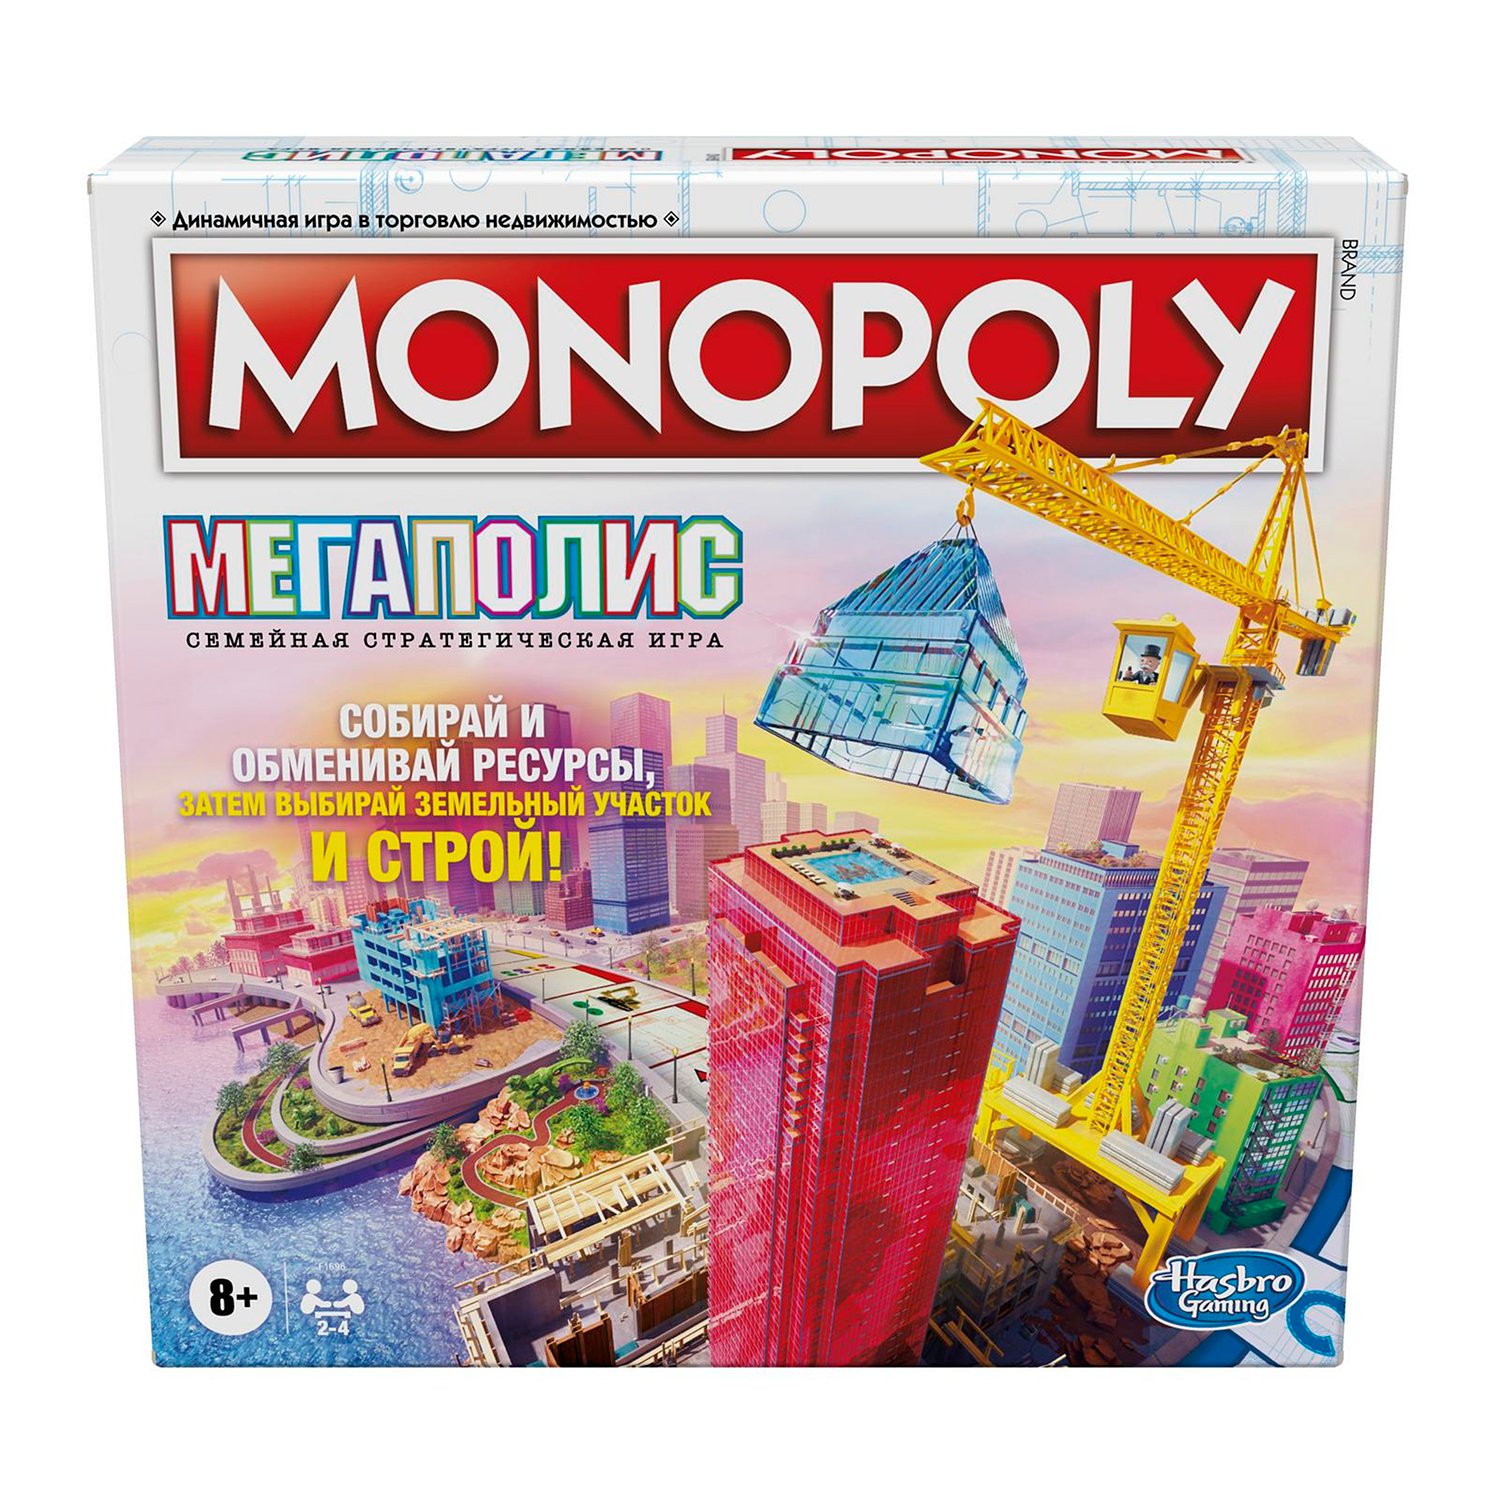 Как играть в “Монополию”: правила, виды, приемы и интересные факты